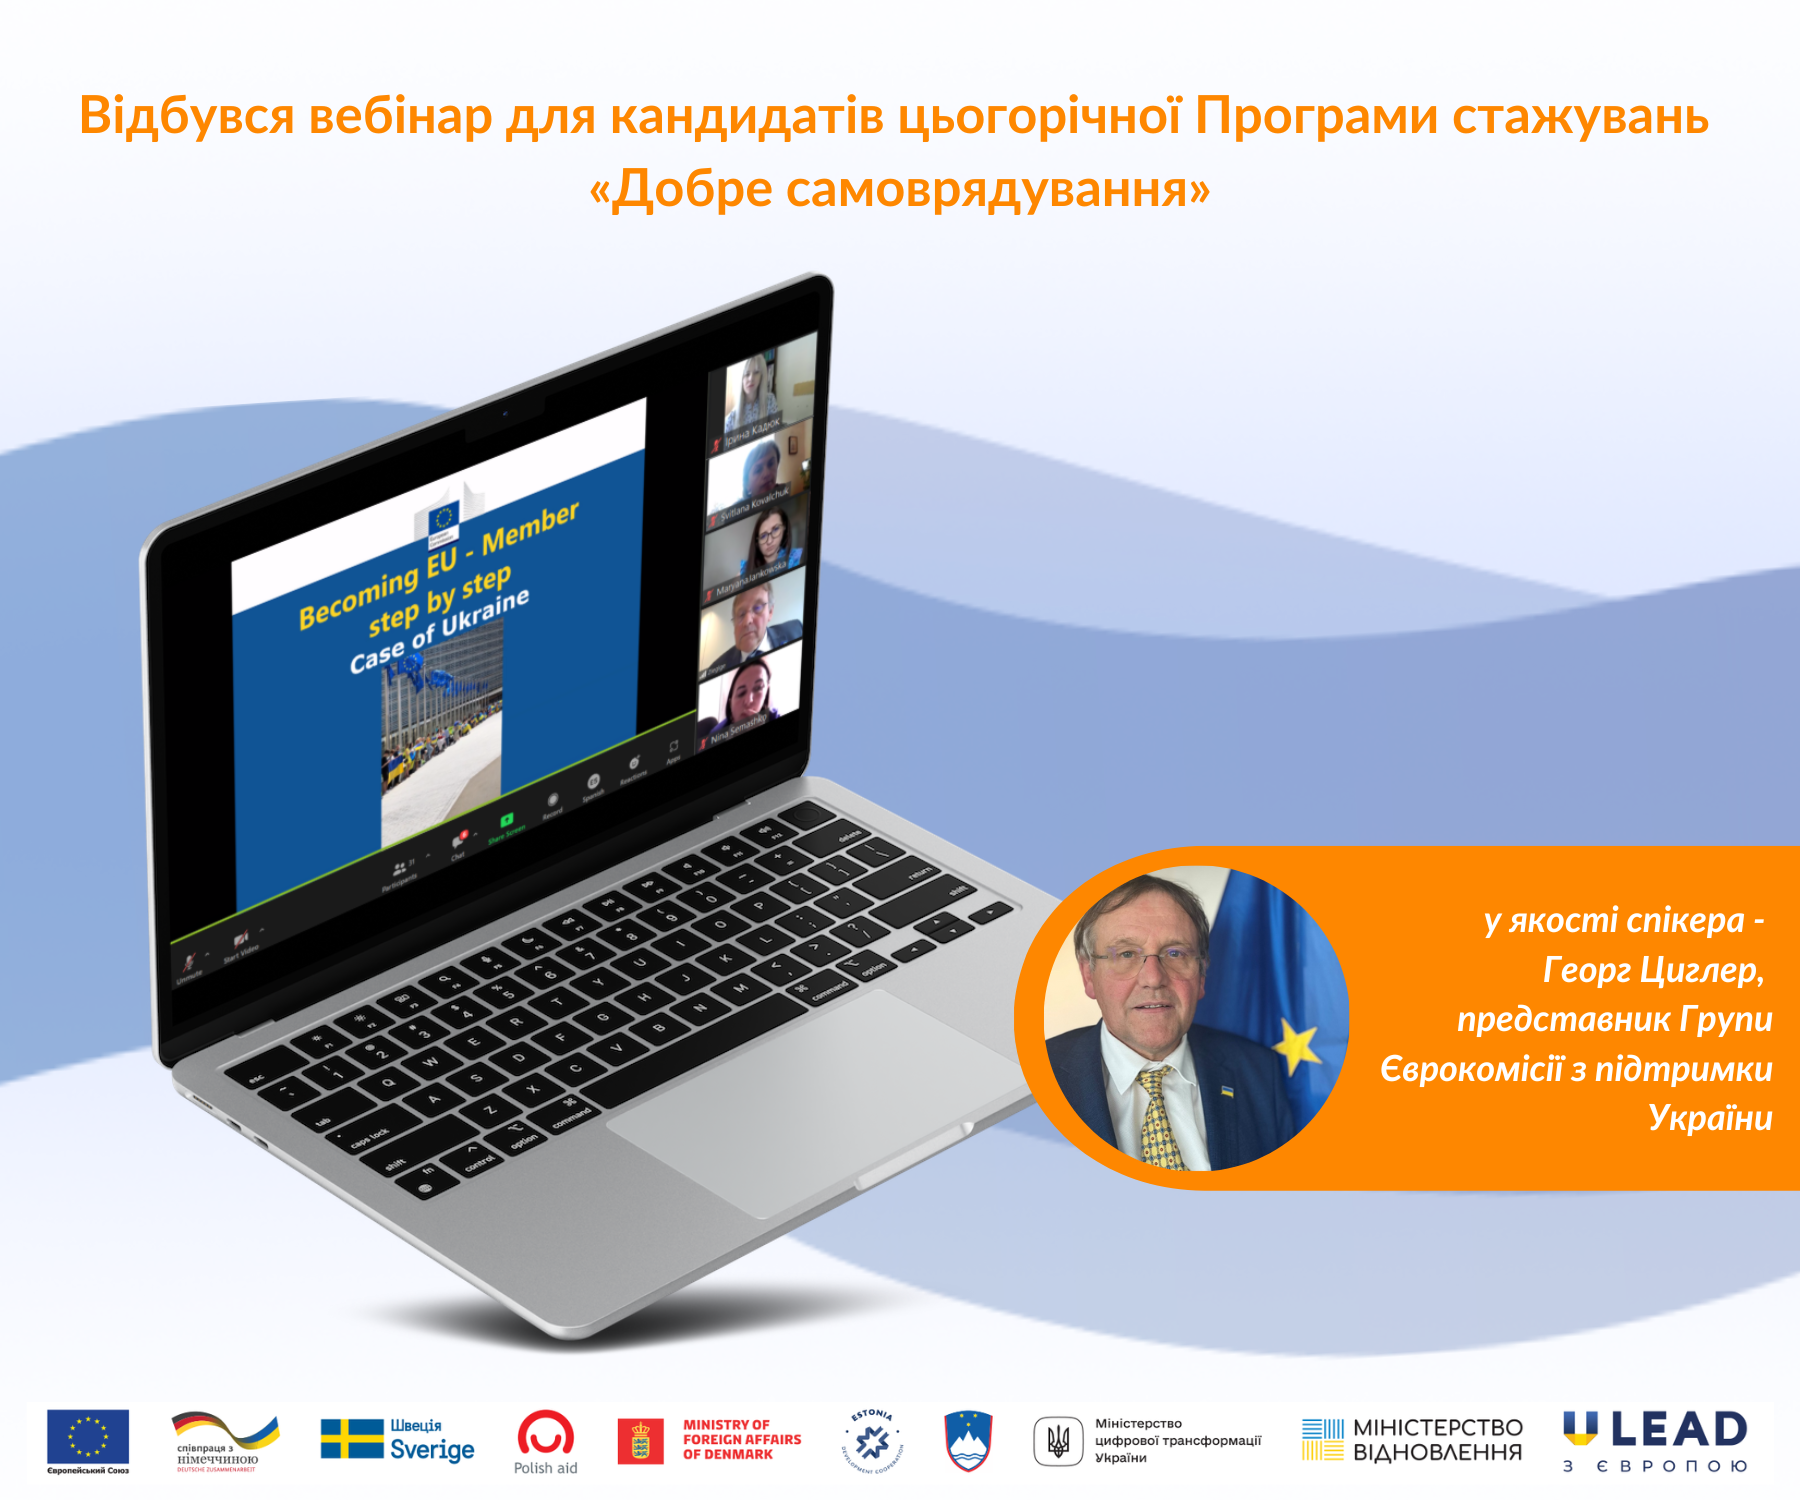 Георг Циглер, представник Групи Єврокомісії з підтримки України, провів вебінар для кандидатів цьогорічної Програми стажувань «Добре самоврядування»